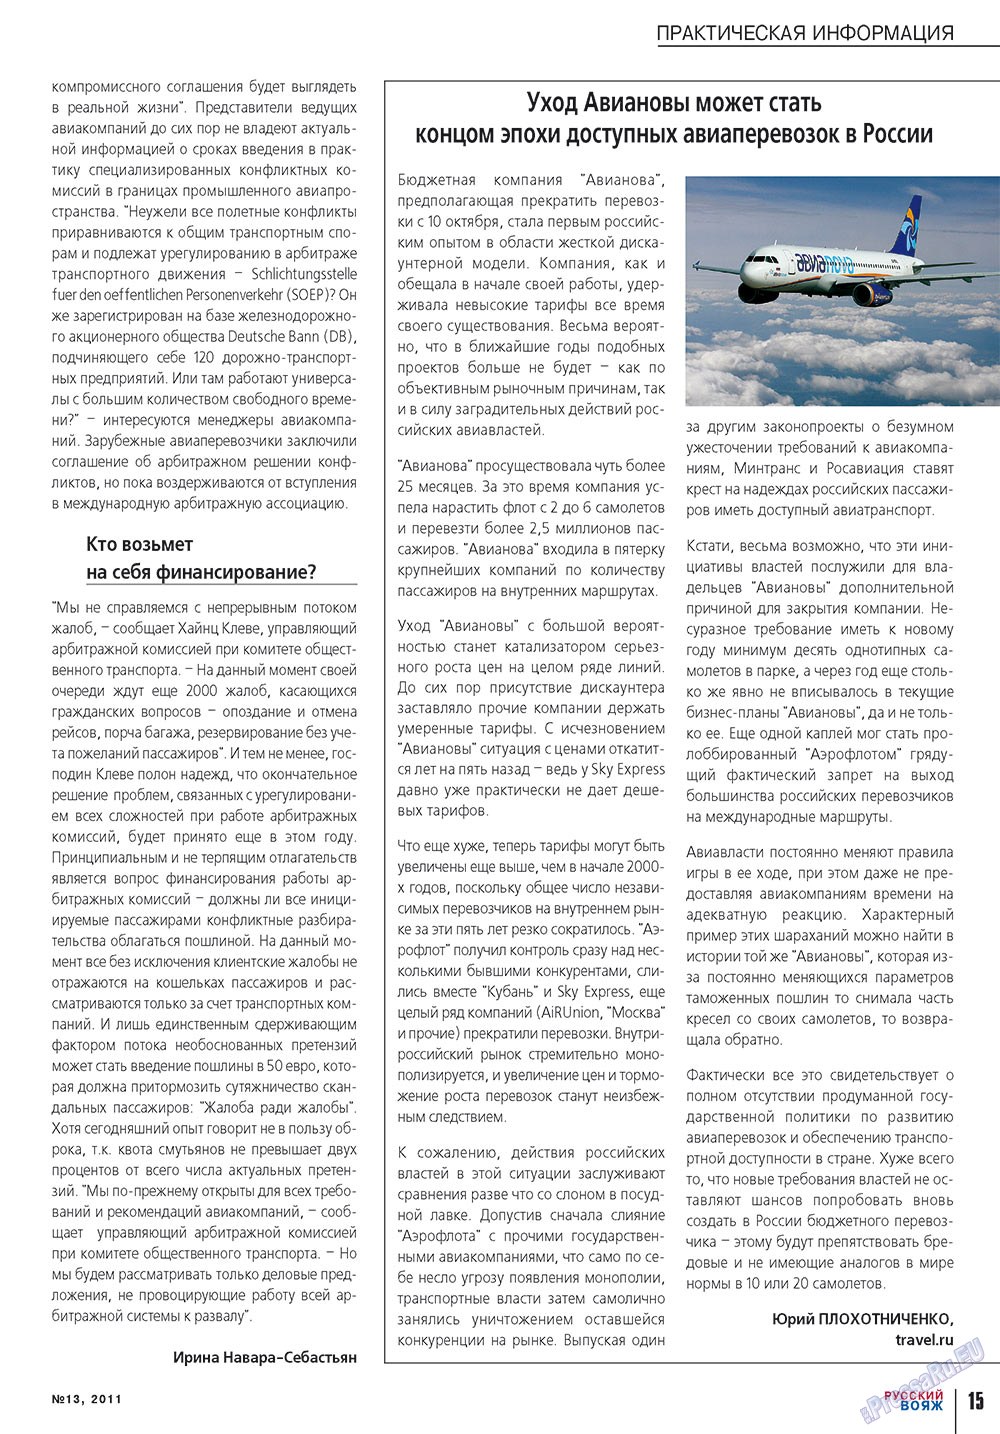 Русский вояж, журнал. 2011 №13 стр.15